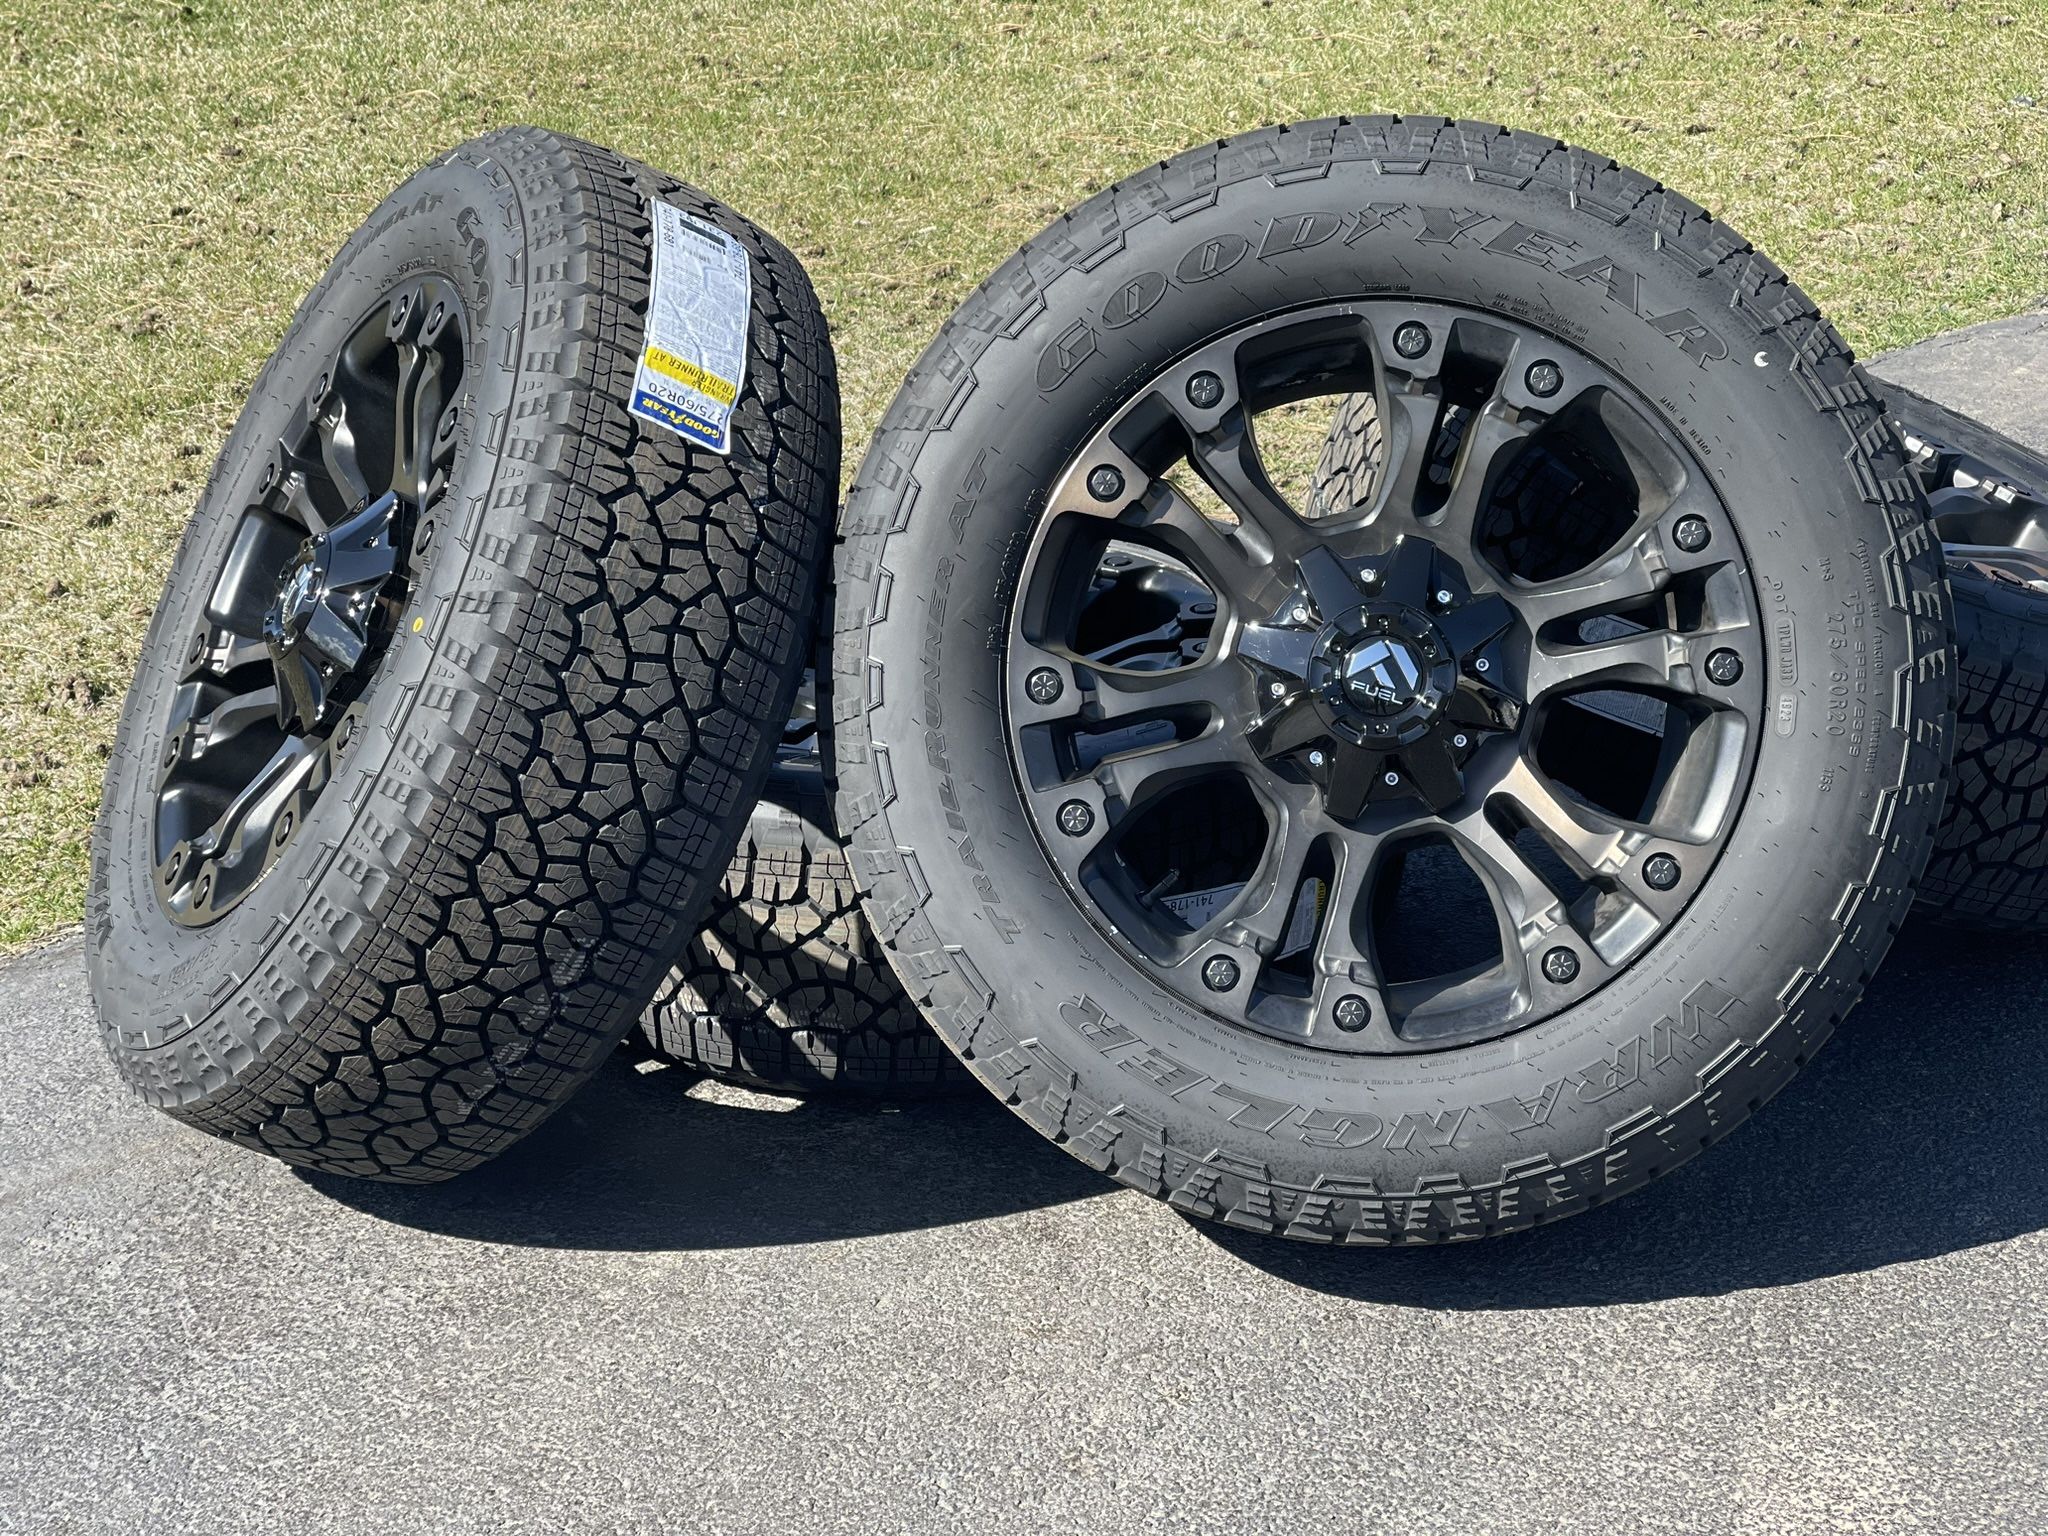 20” Fuel Wheels Dodge Ram 1500 rims 5x5.5 Goodyear A/T tires Toyota Tundra 5x150 275/60R20